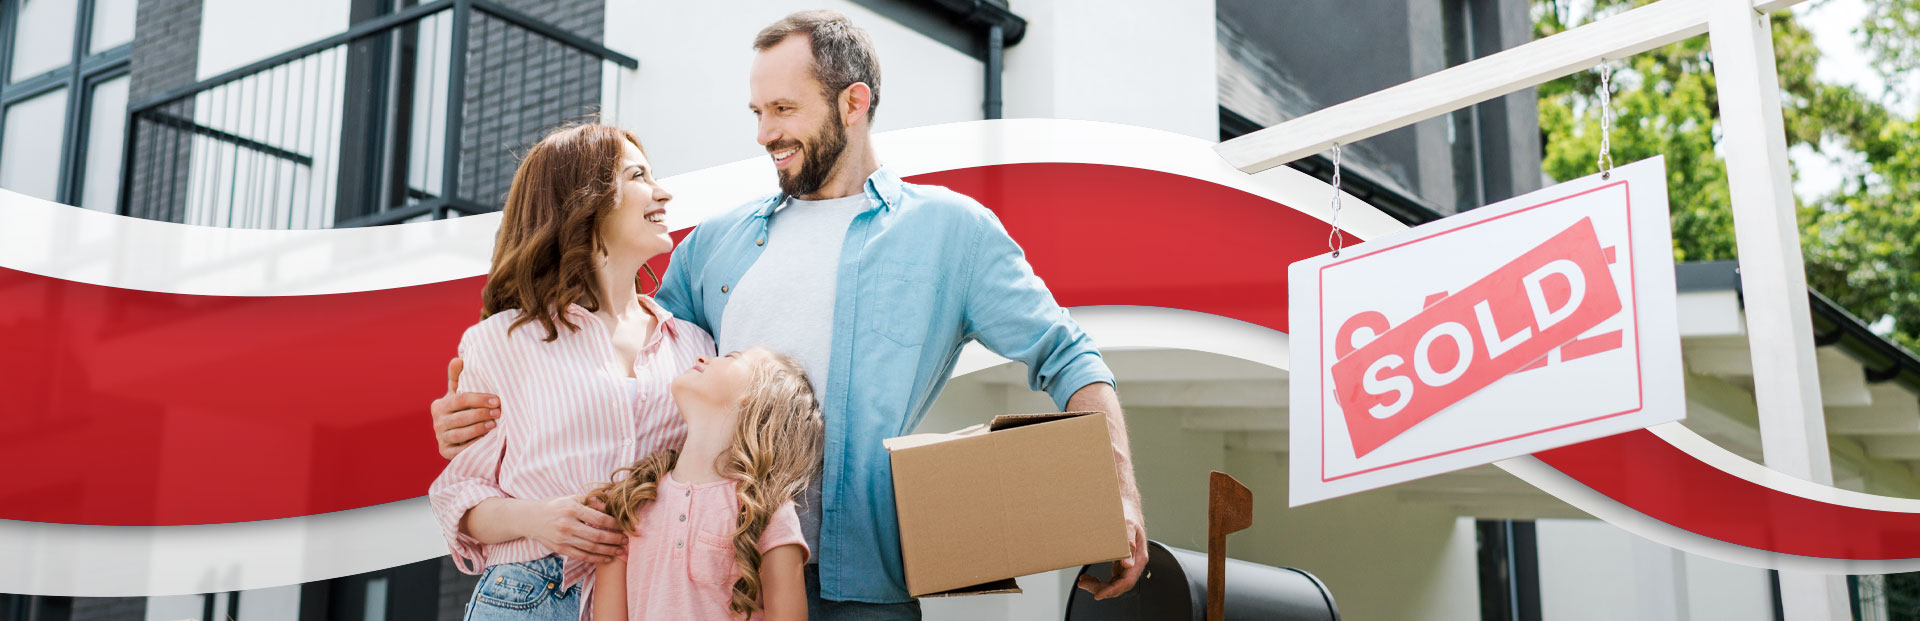 Buyer's Guide for Household Moves Slide